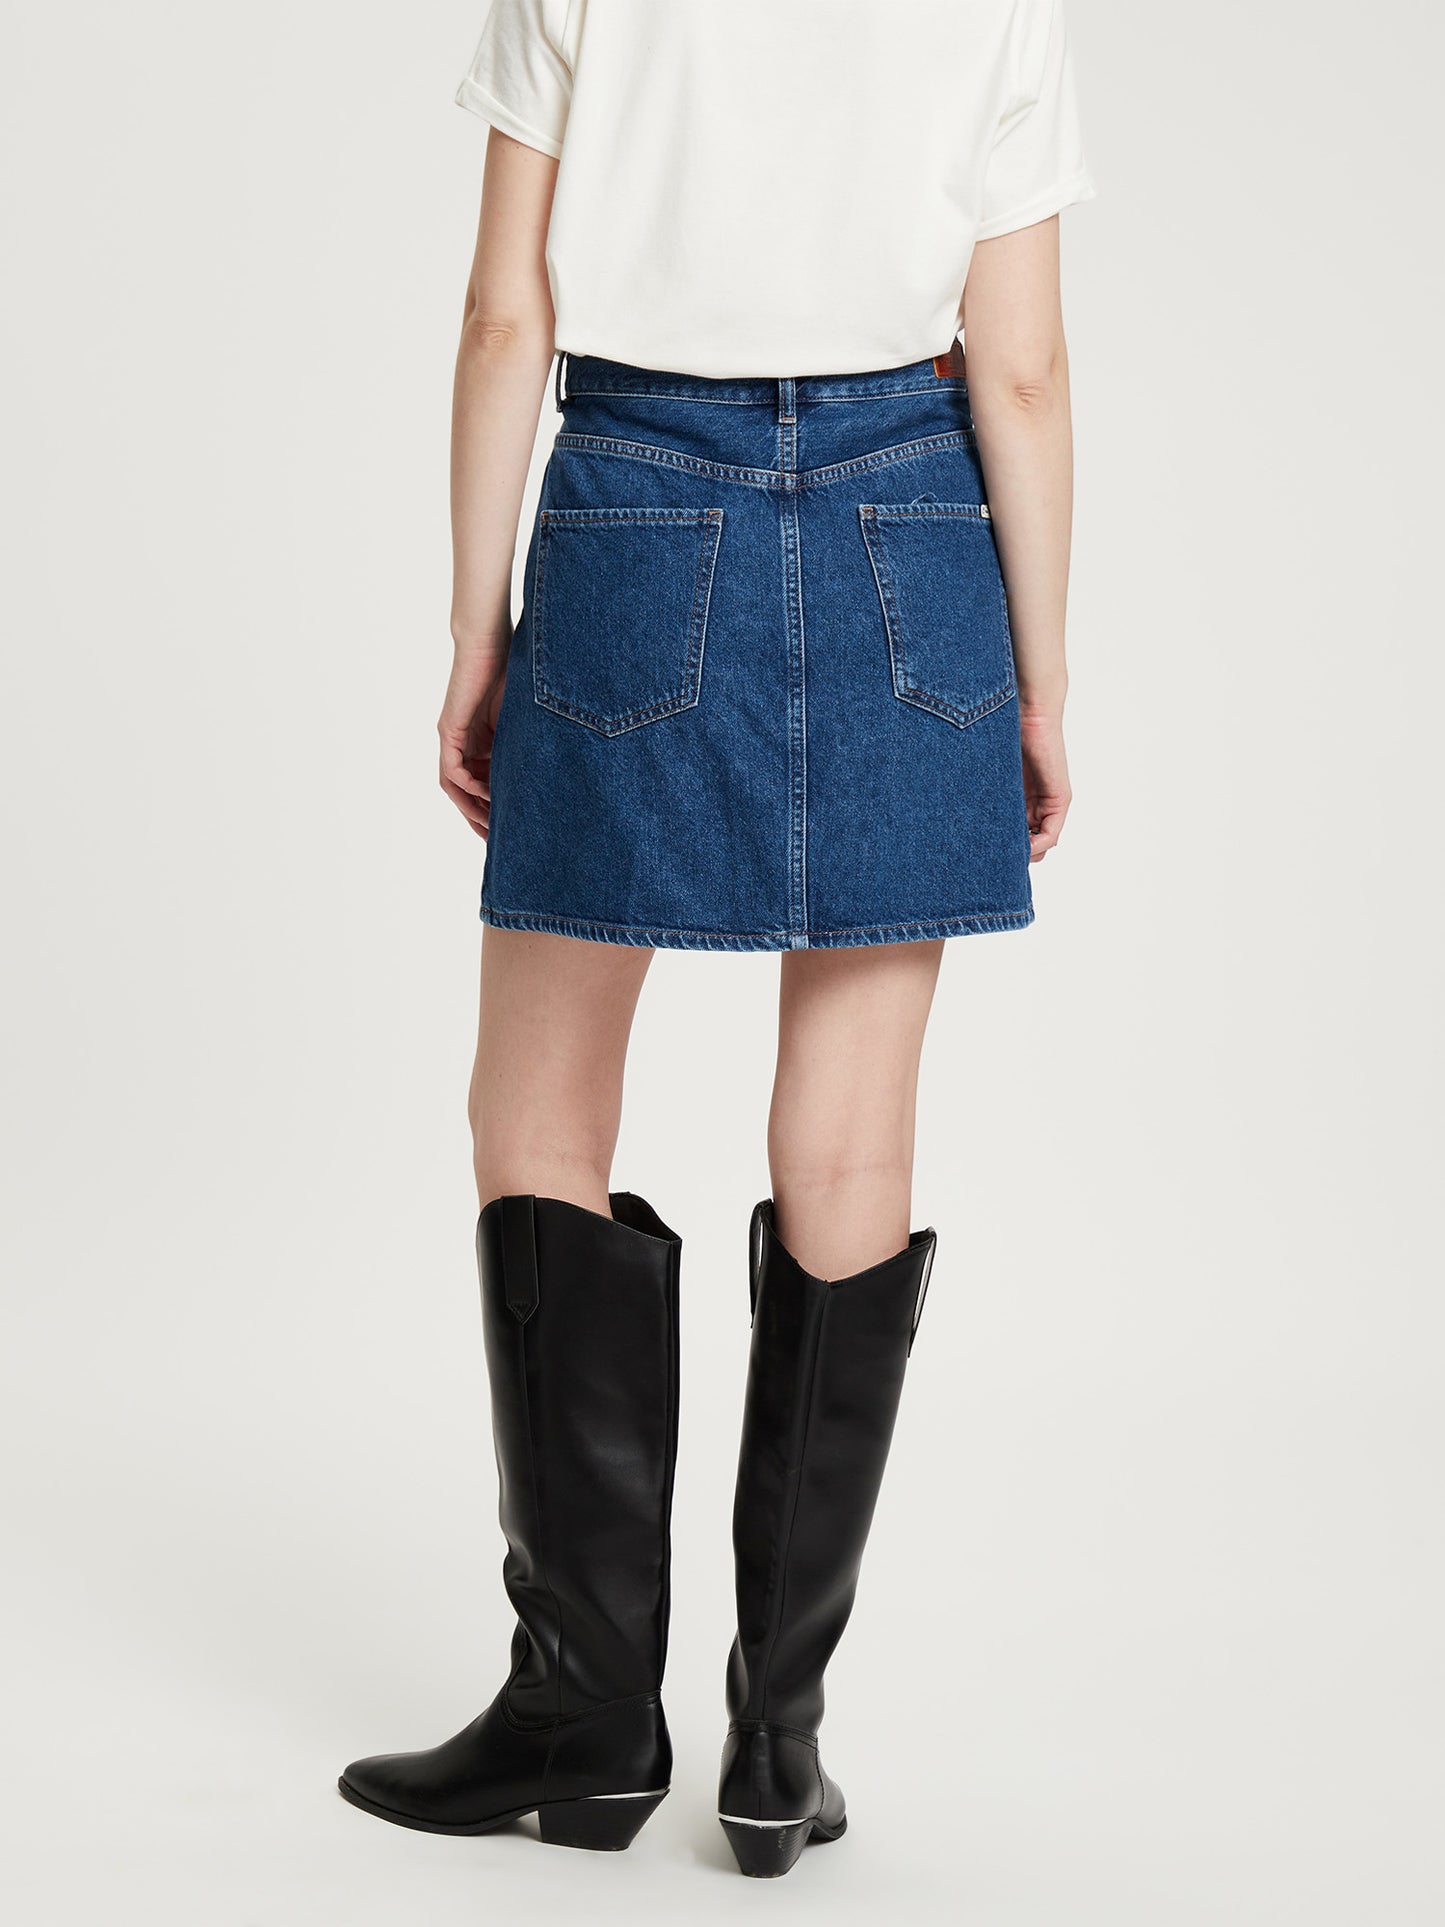 Women's regular mini skirt five-pocket style blue